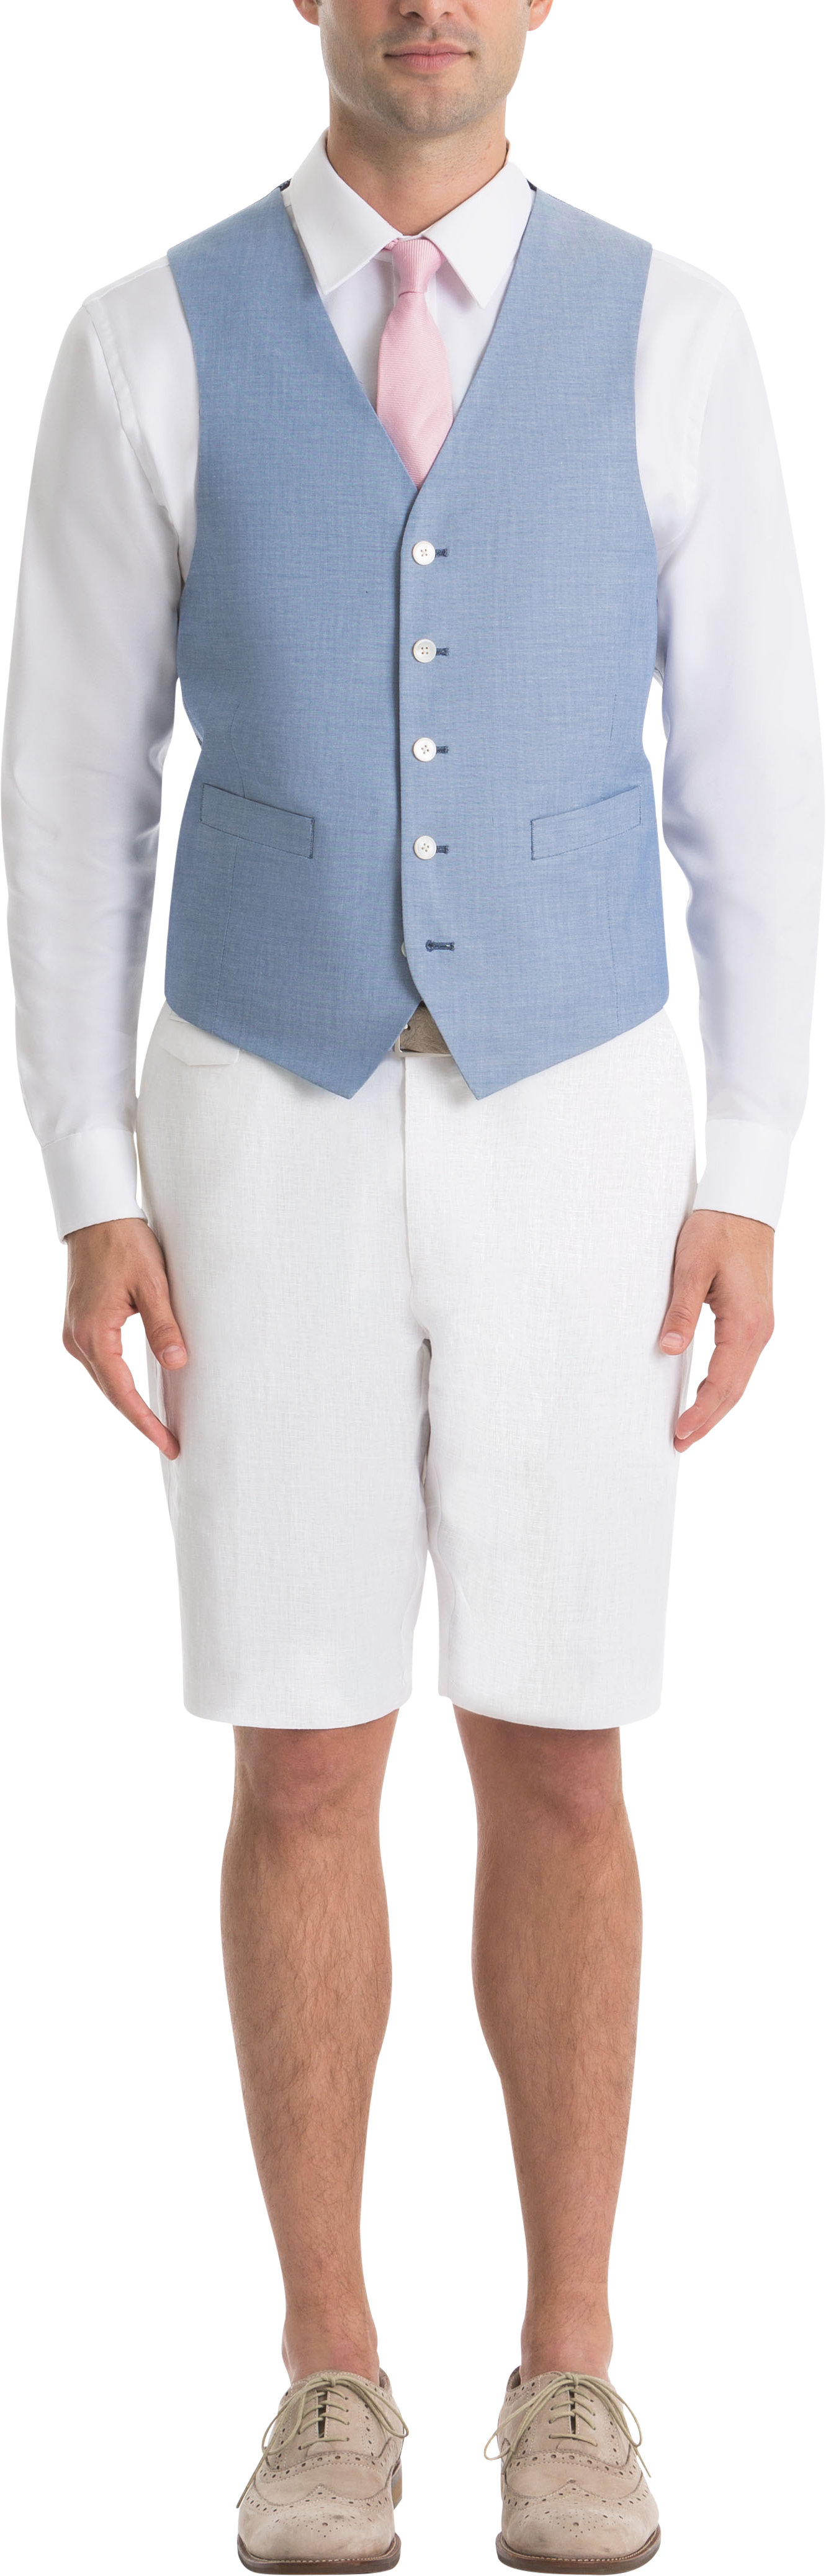 Lauren By Ralph Lauren Classic Fit Suit Separates Vest, Light Blue Chambray  - Men's Suits | Men's